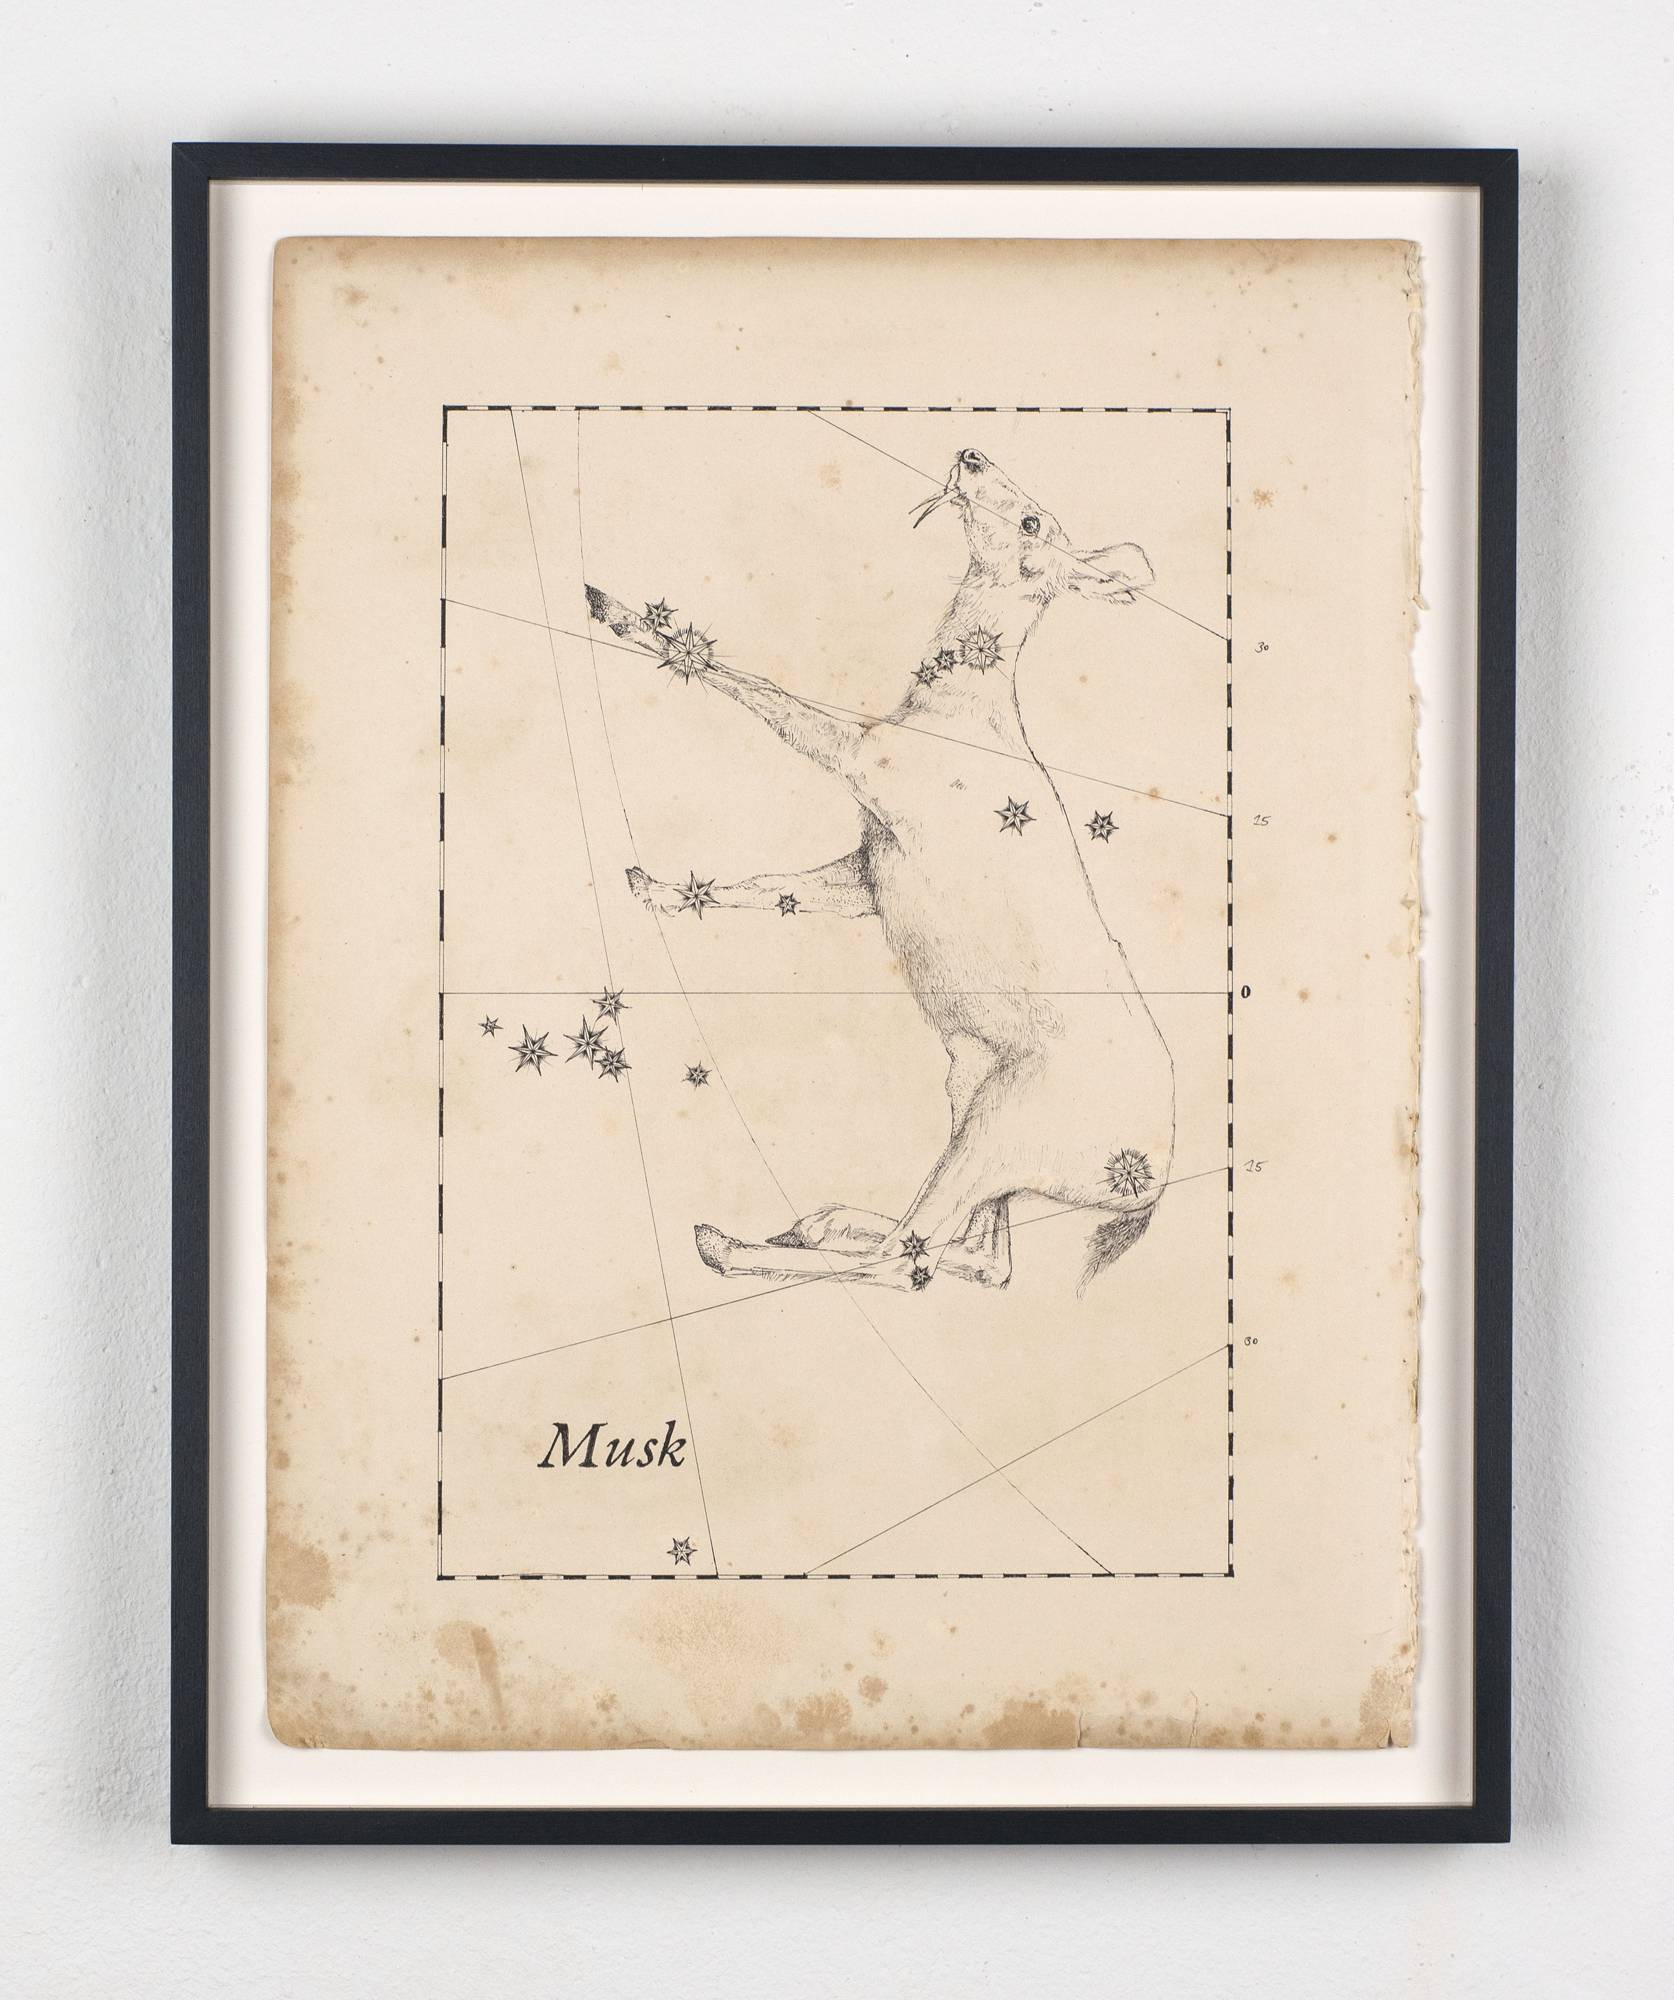 Musk, 2021 Filzstift auf historischem Papier, 34 x 26 cm